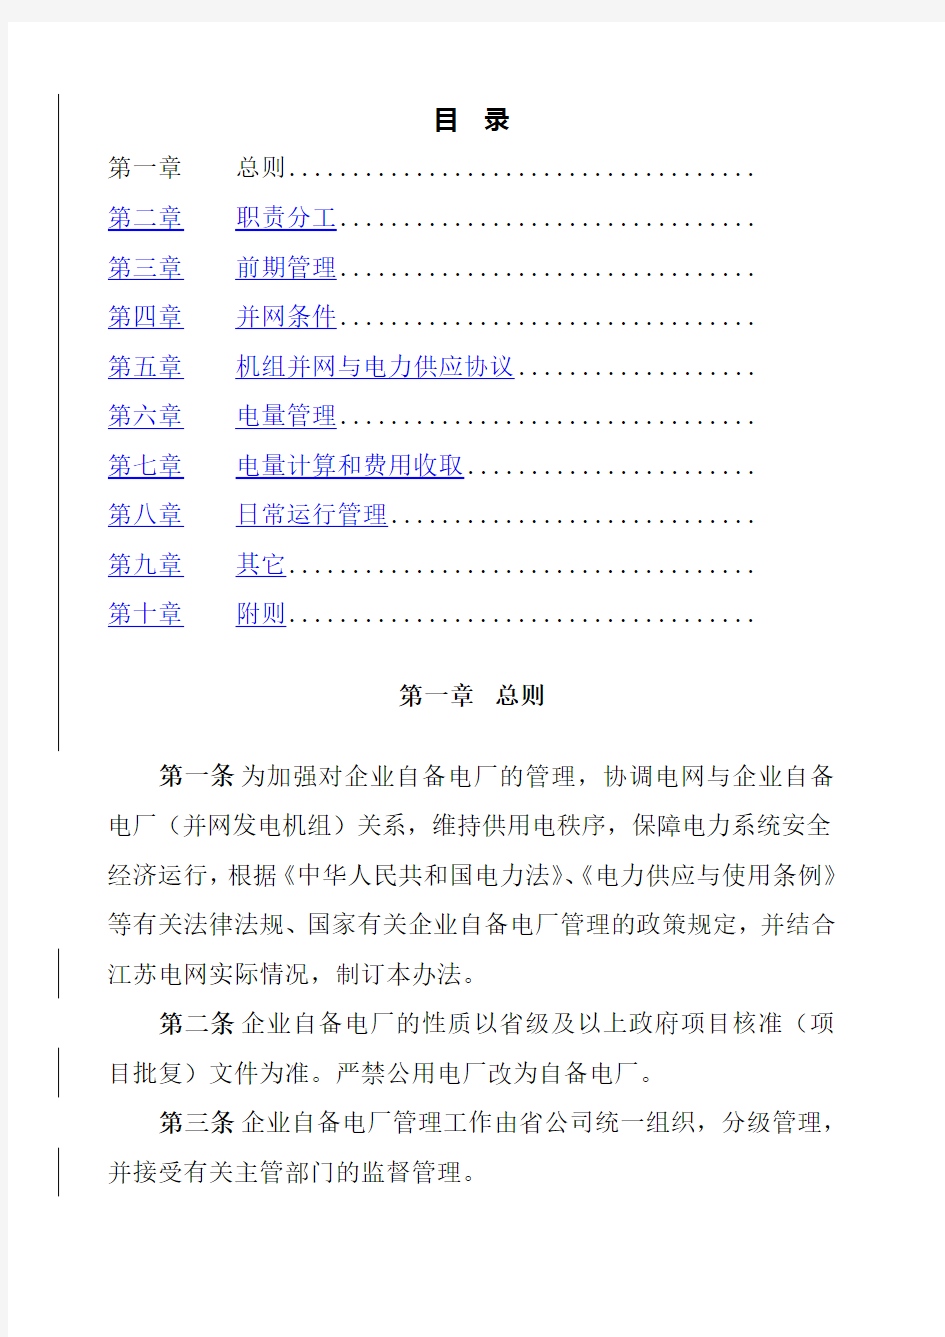 江苏省电力公司加强全省企业自备电厂管理办法